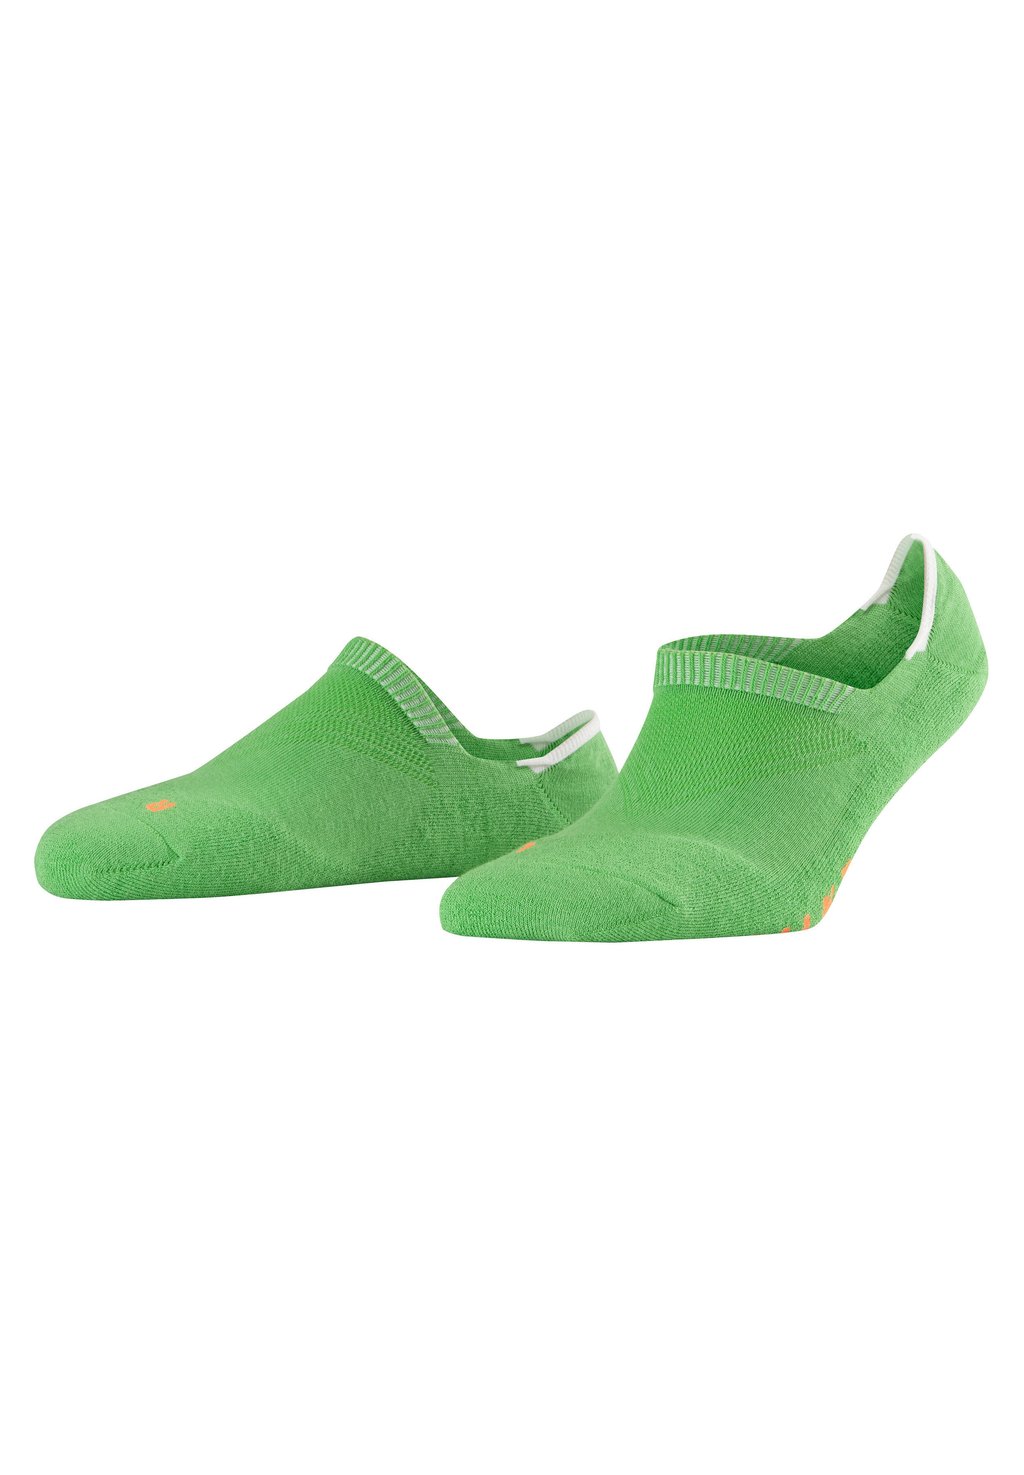 Носки COOL KICK ANATOMICAL PLUSH SOLE FALKE, цвет green flash (7236) носки cool kick anatomical plush sole falke цвет cobalt